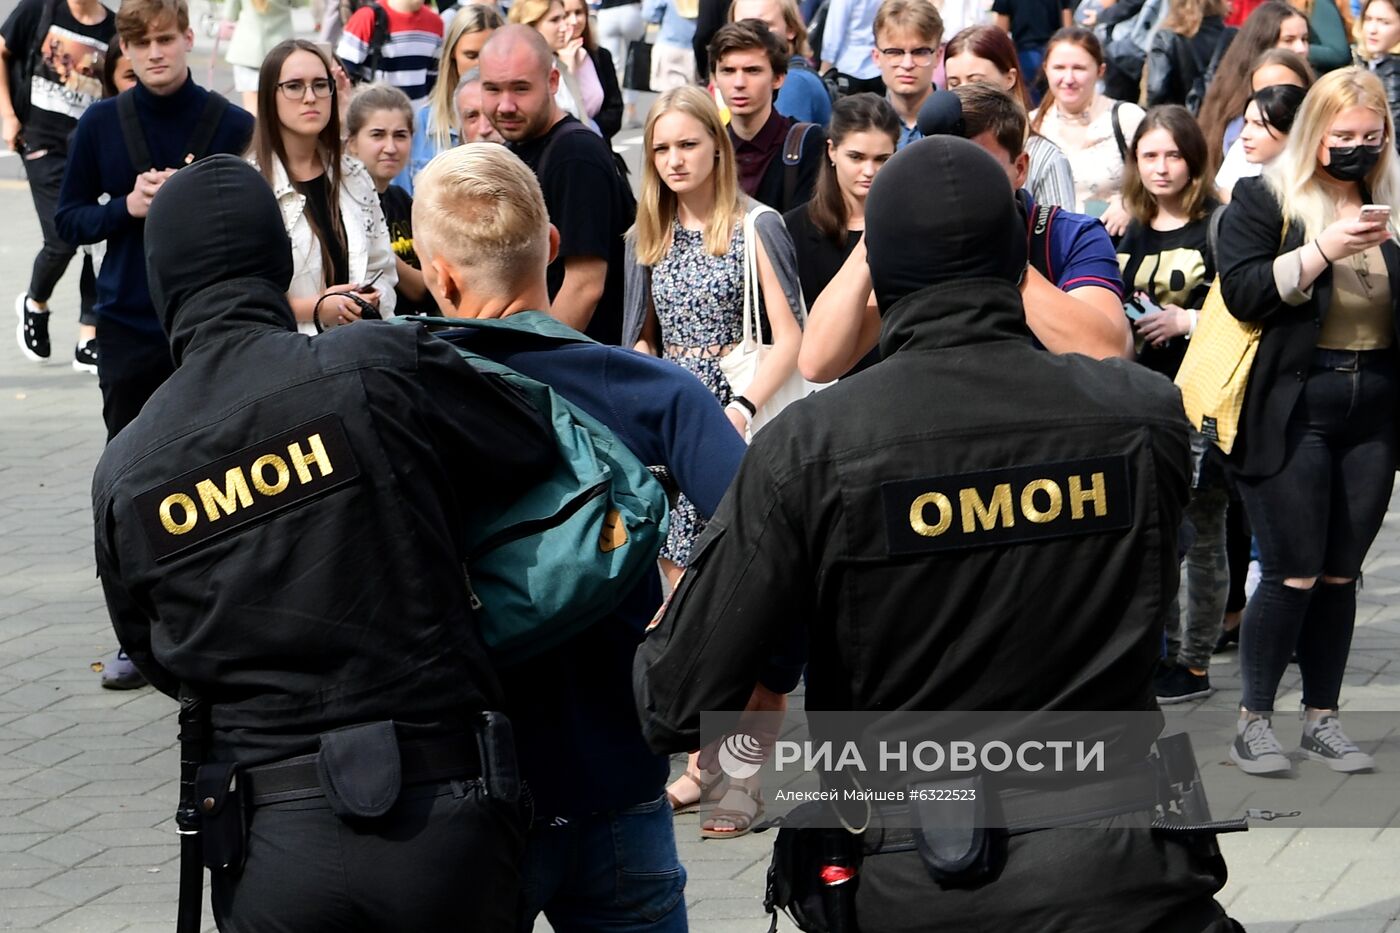 Акция студентов в Минске 